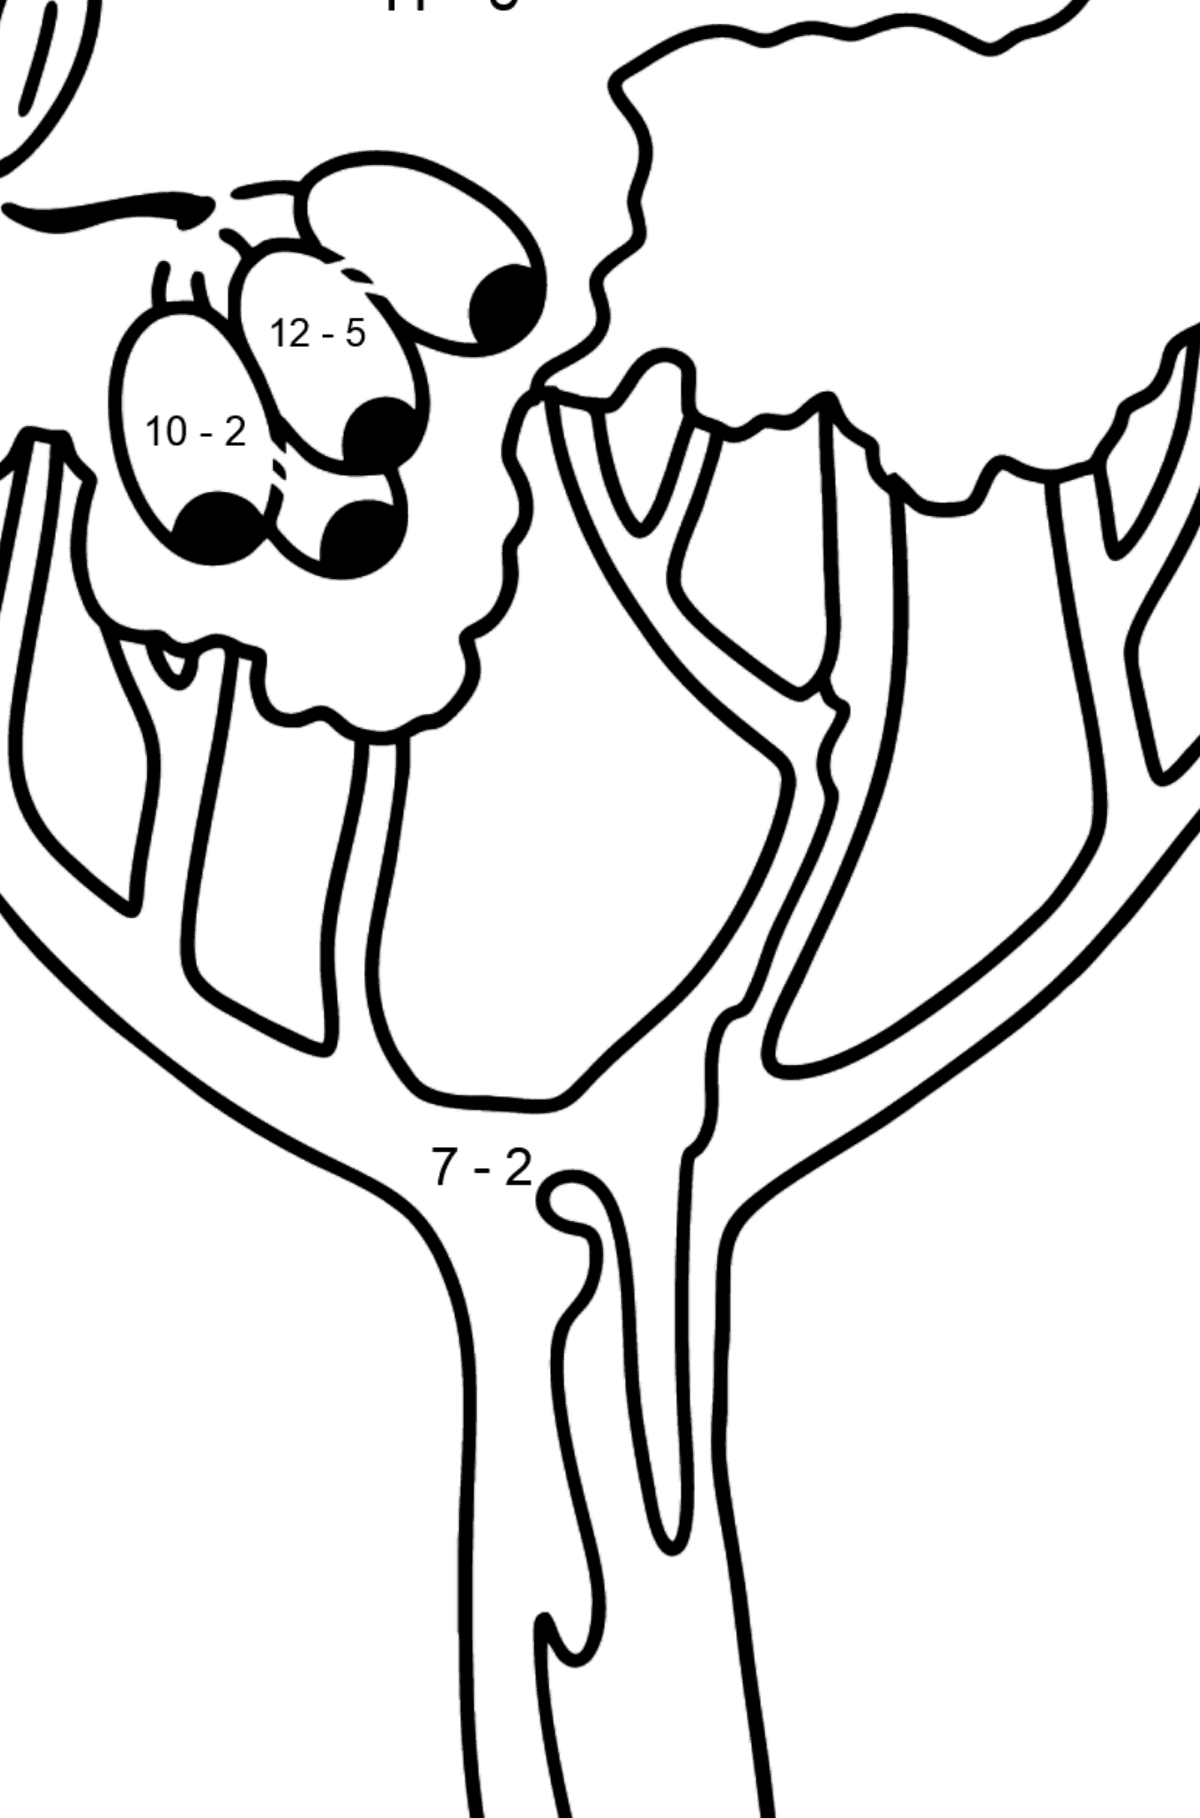 Mewarnai gambar pohon karet - Corimbia - Pewarnaan Matematika: Pengurangan untuk anak-anak